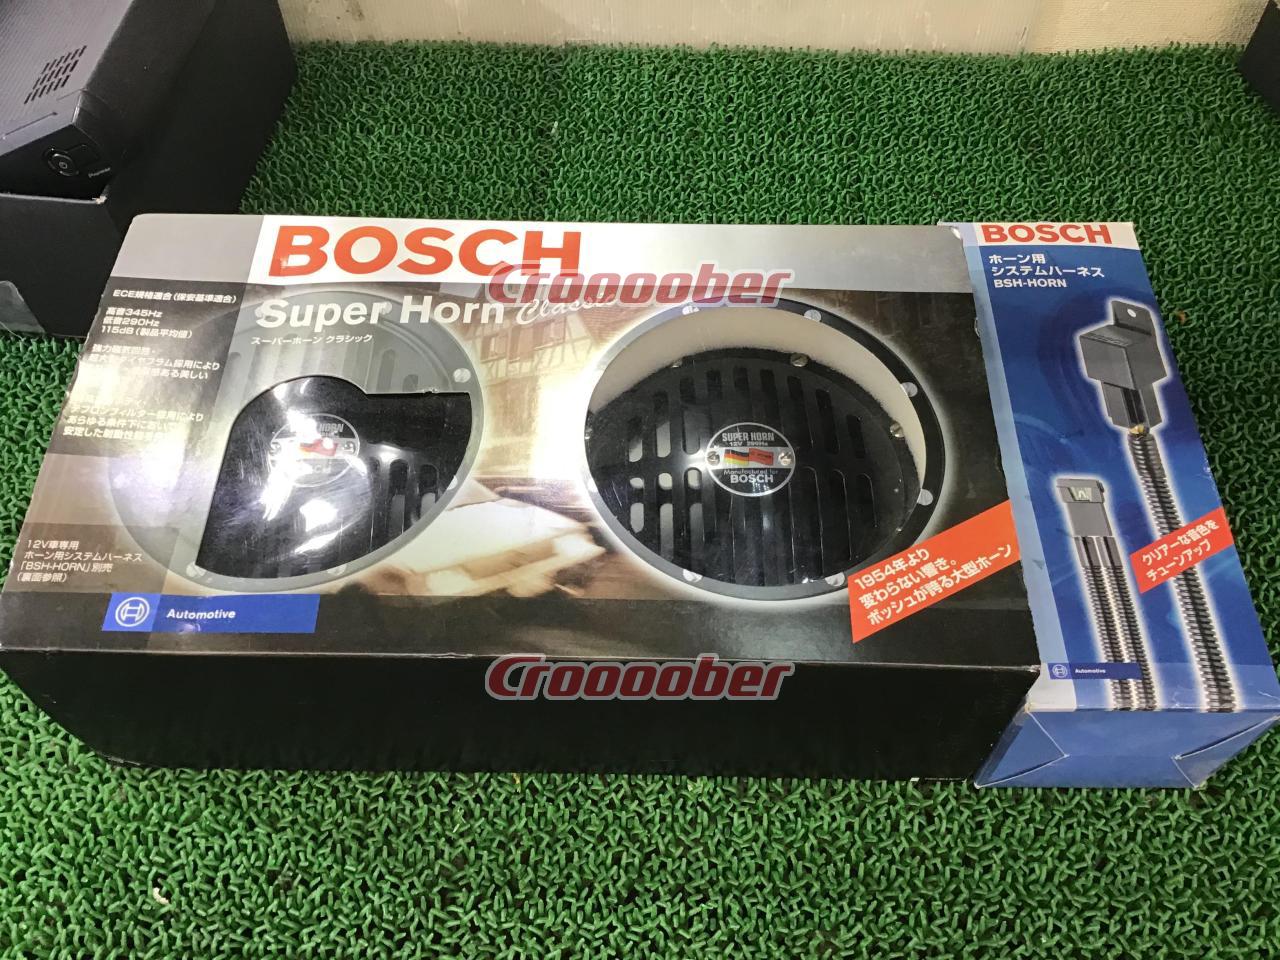 BOSCH BH-SHCスーパークラシックホーン + 専用システムハーネス BSH-HORN | 電装系 ホーンパーツの通販なら |  Croooober(クルーバー)